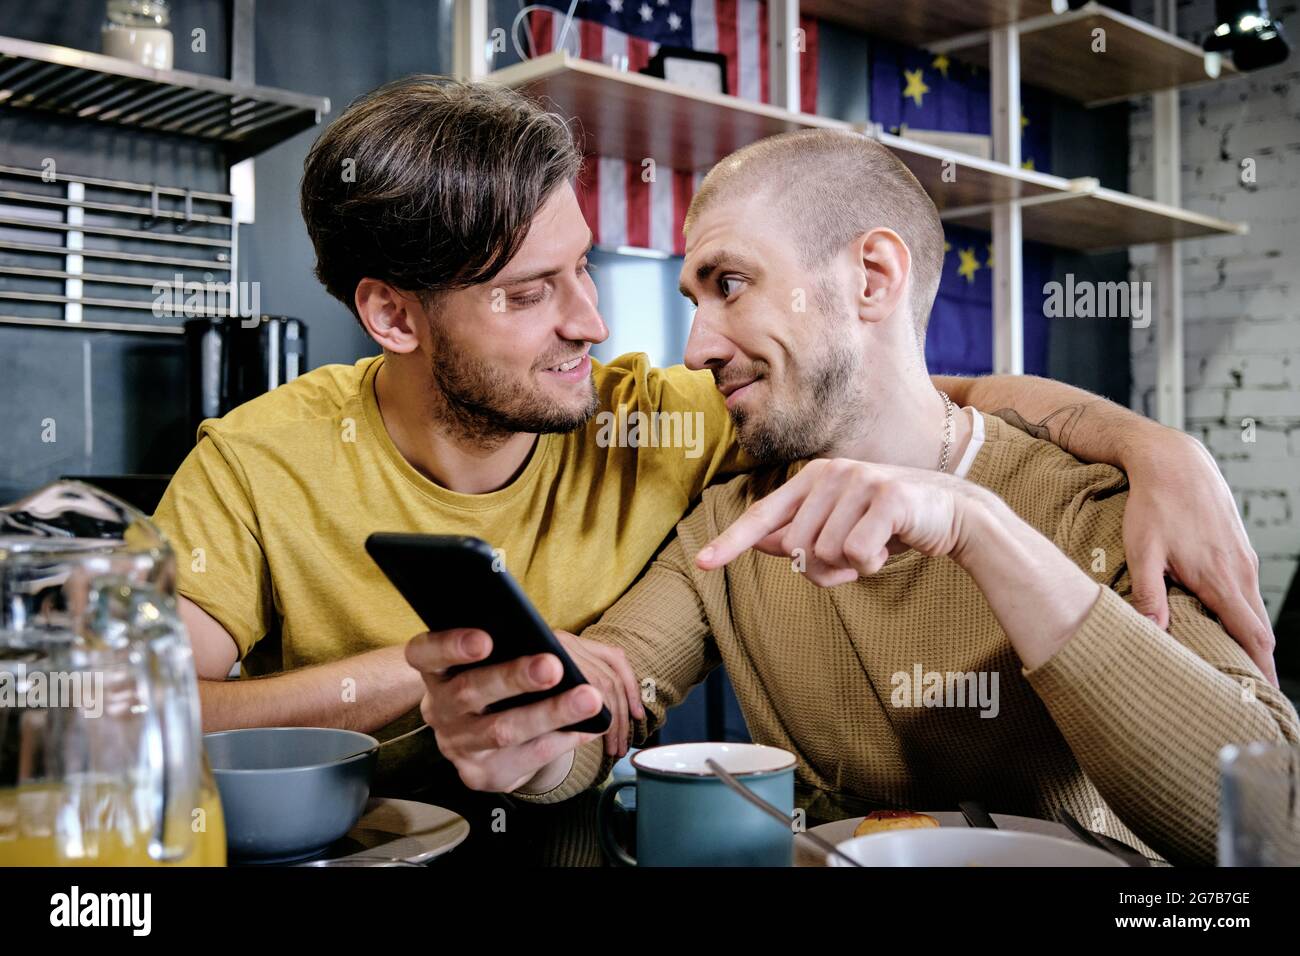 Un jeune gay embrasse son petit ami lorsqu'il discute de nouvelles applications mobiles ou de nouvelles sur les médias sociaux pendant le petit-déjeuner Banque D'Images